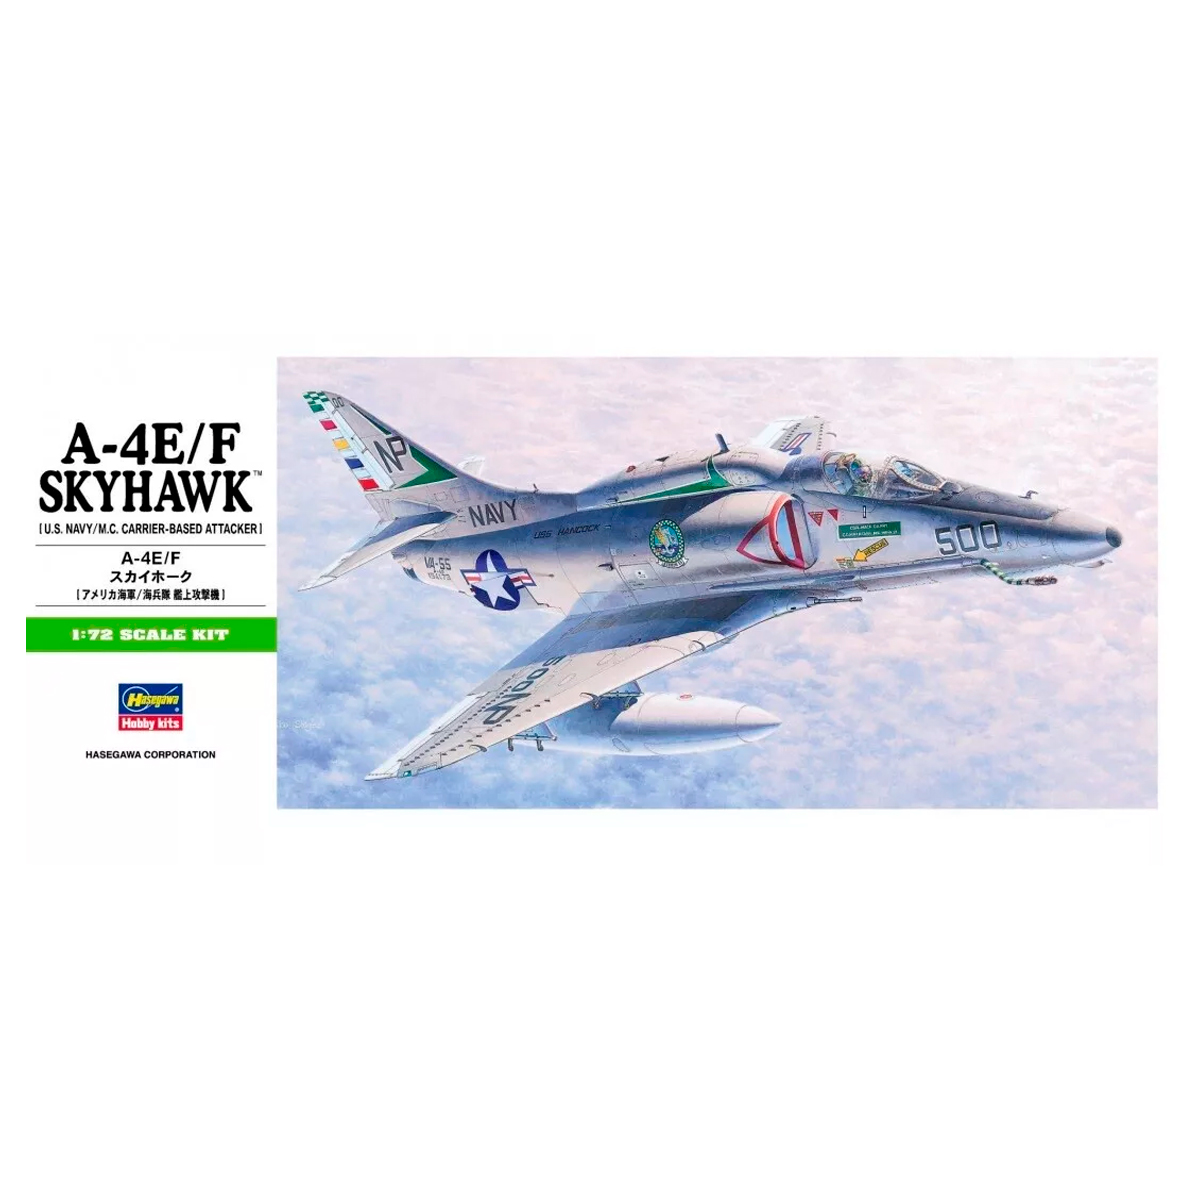 B9 – 1/72 A-4E/F Skyhawk